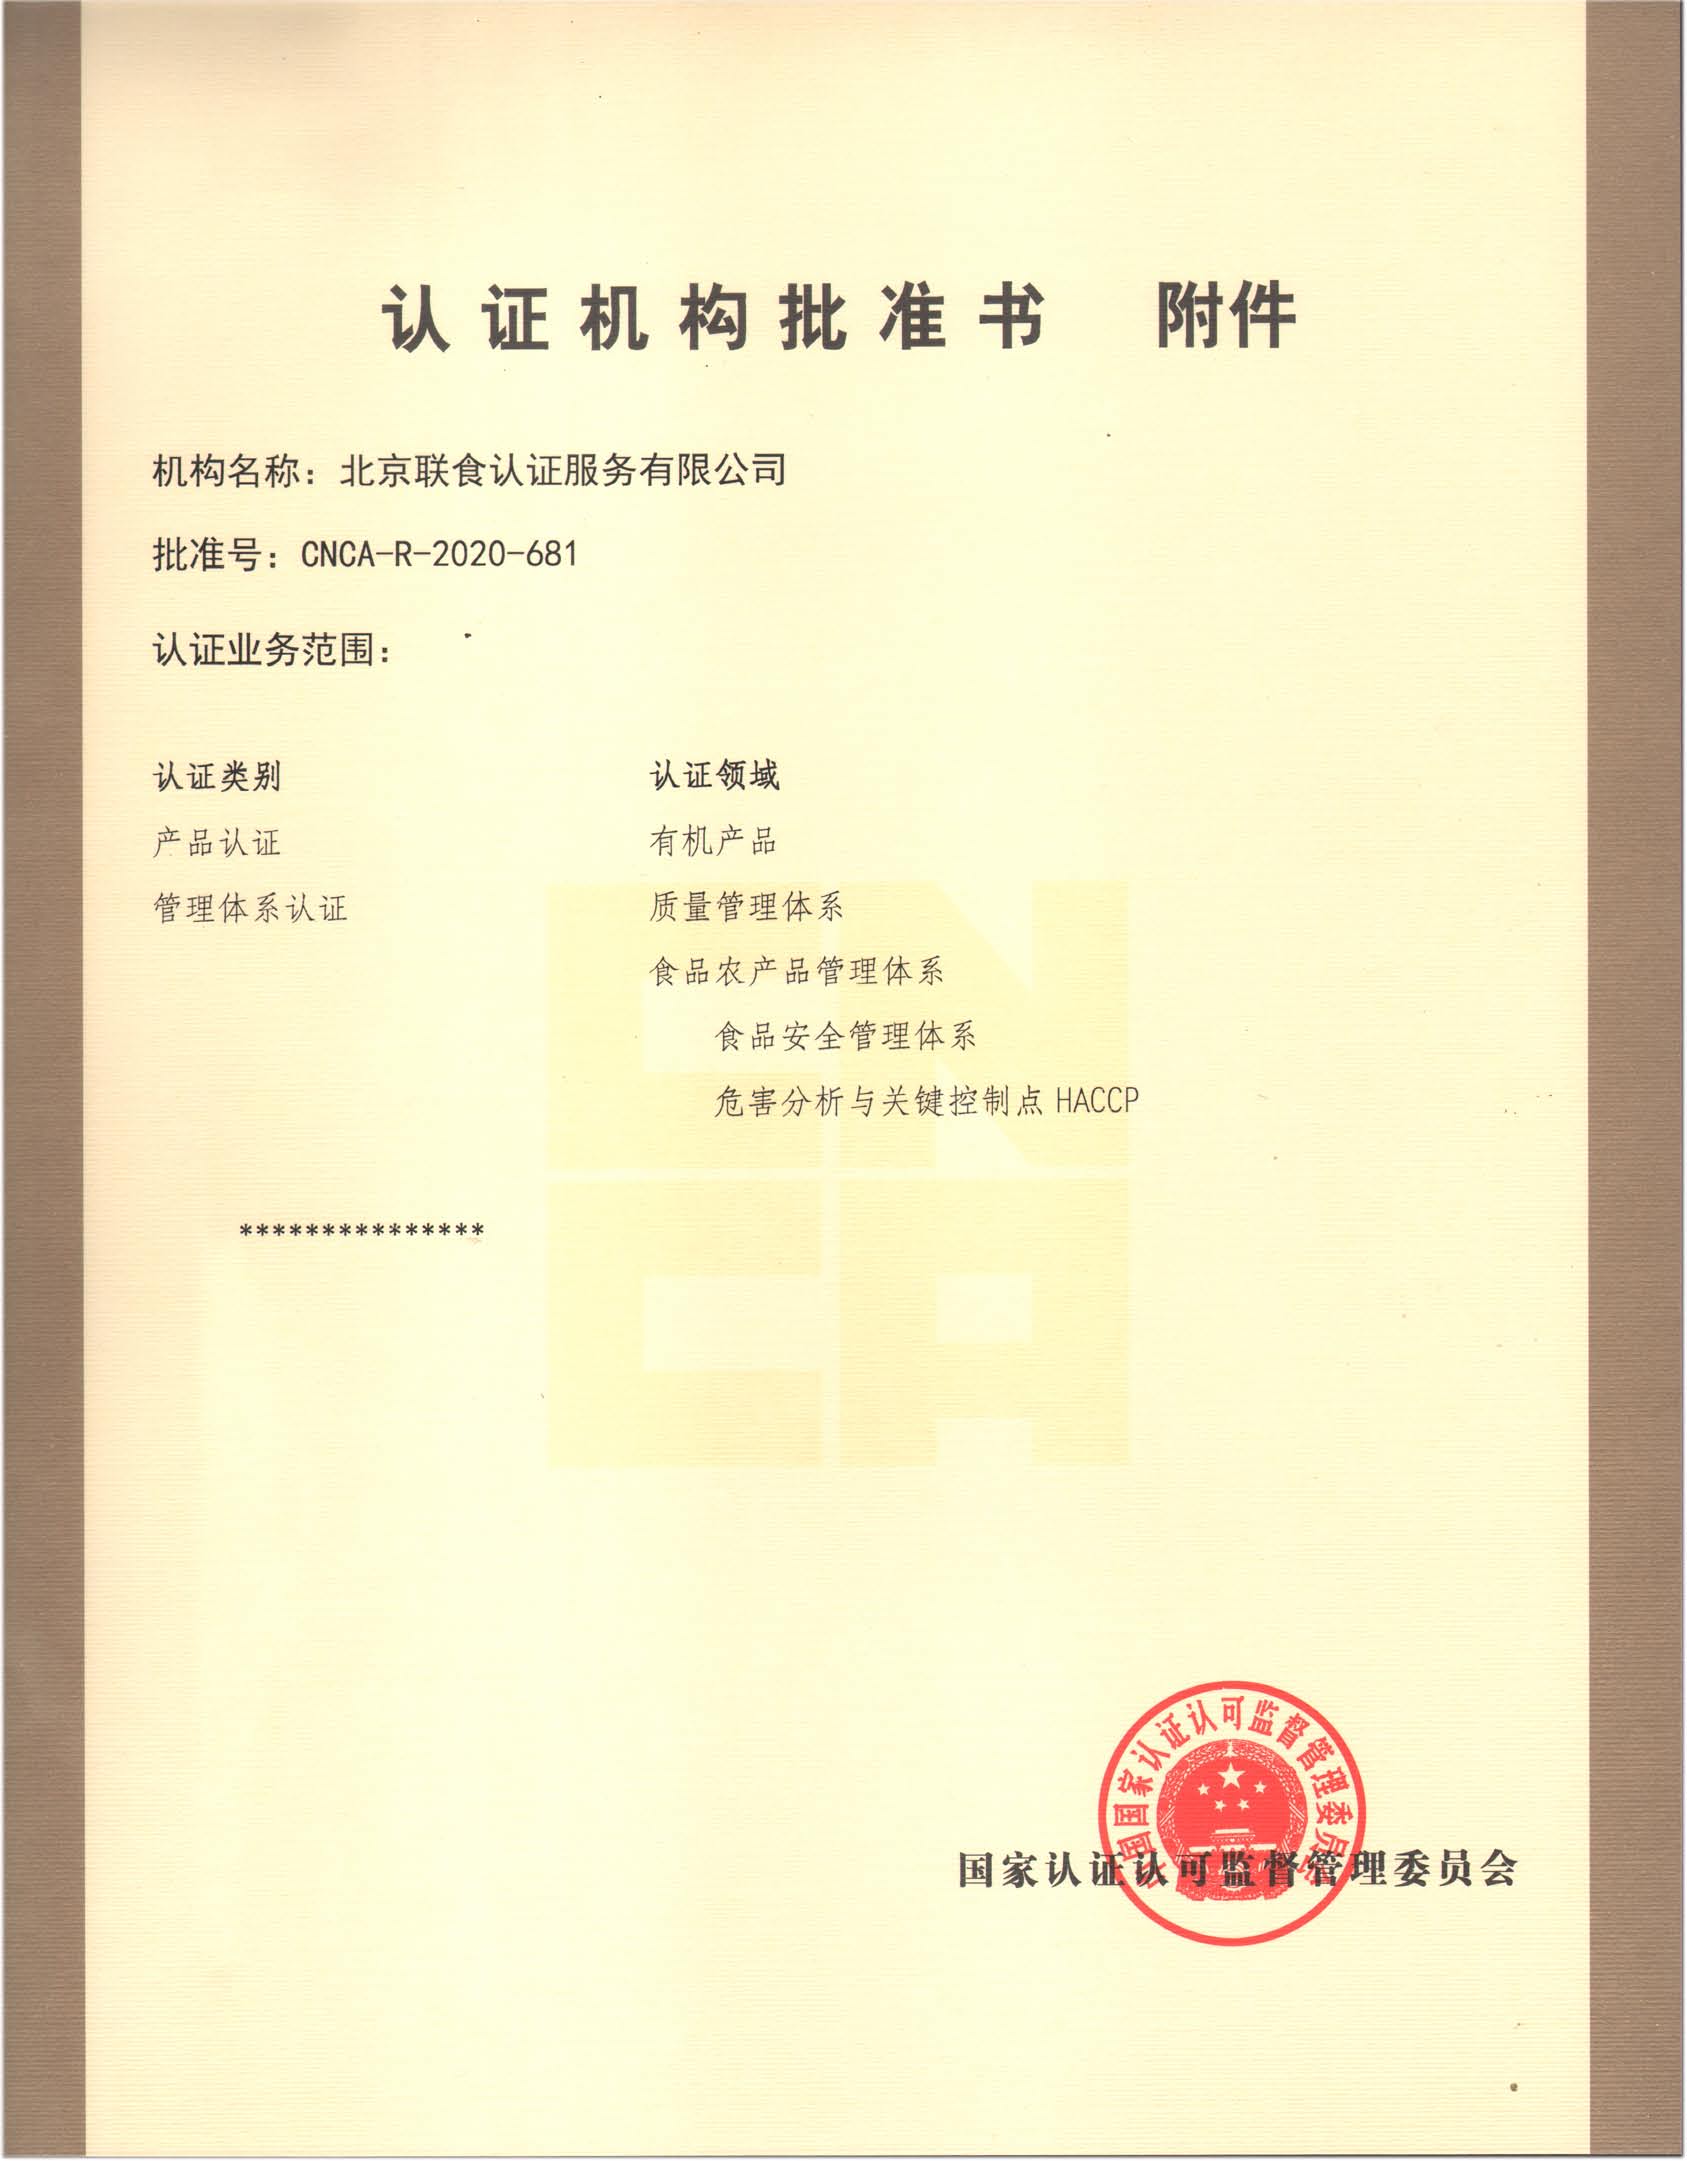 北京联食认证服务有限公司-附件扩有机产品2021.3.8.jpg